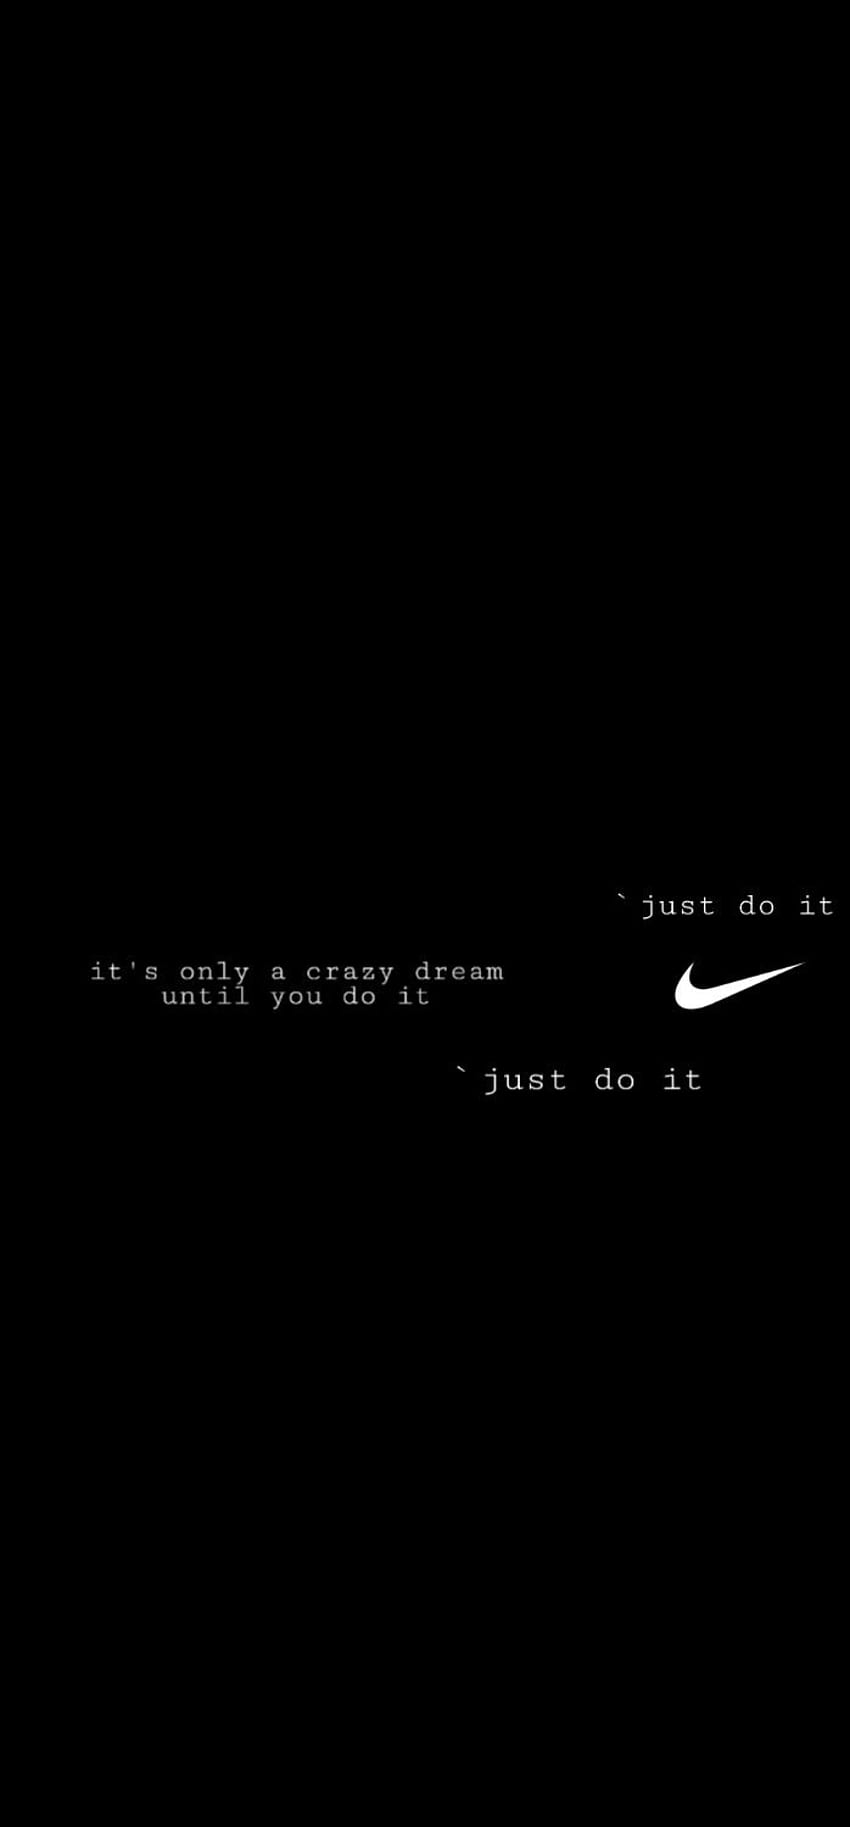 하기 전까지는 미친 꿈일 뿐입니다(Just do it). Just Do It , Cool Nike , Nike iphone , Just Do It 나이키 로고 HD 전화 배경 화면